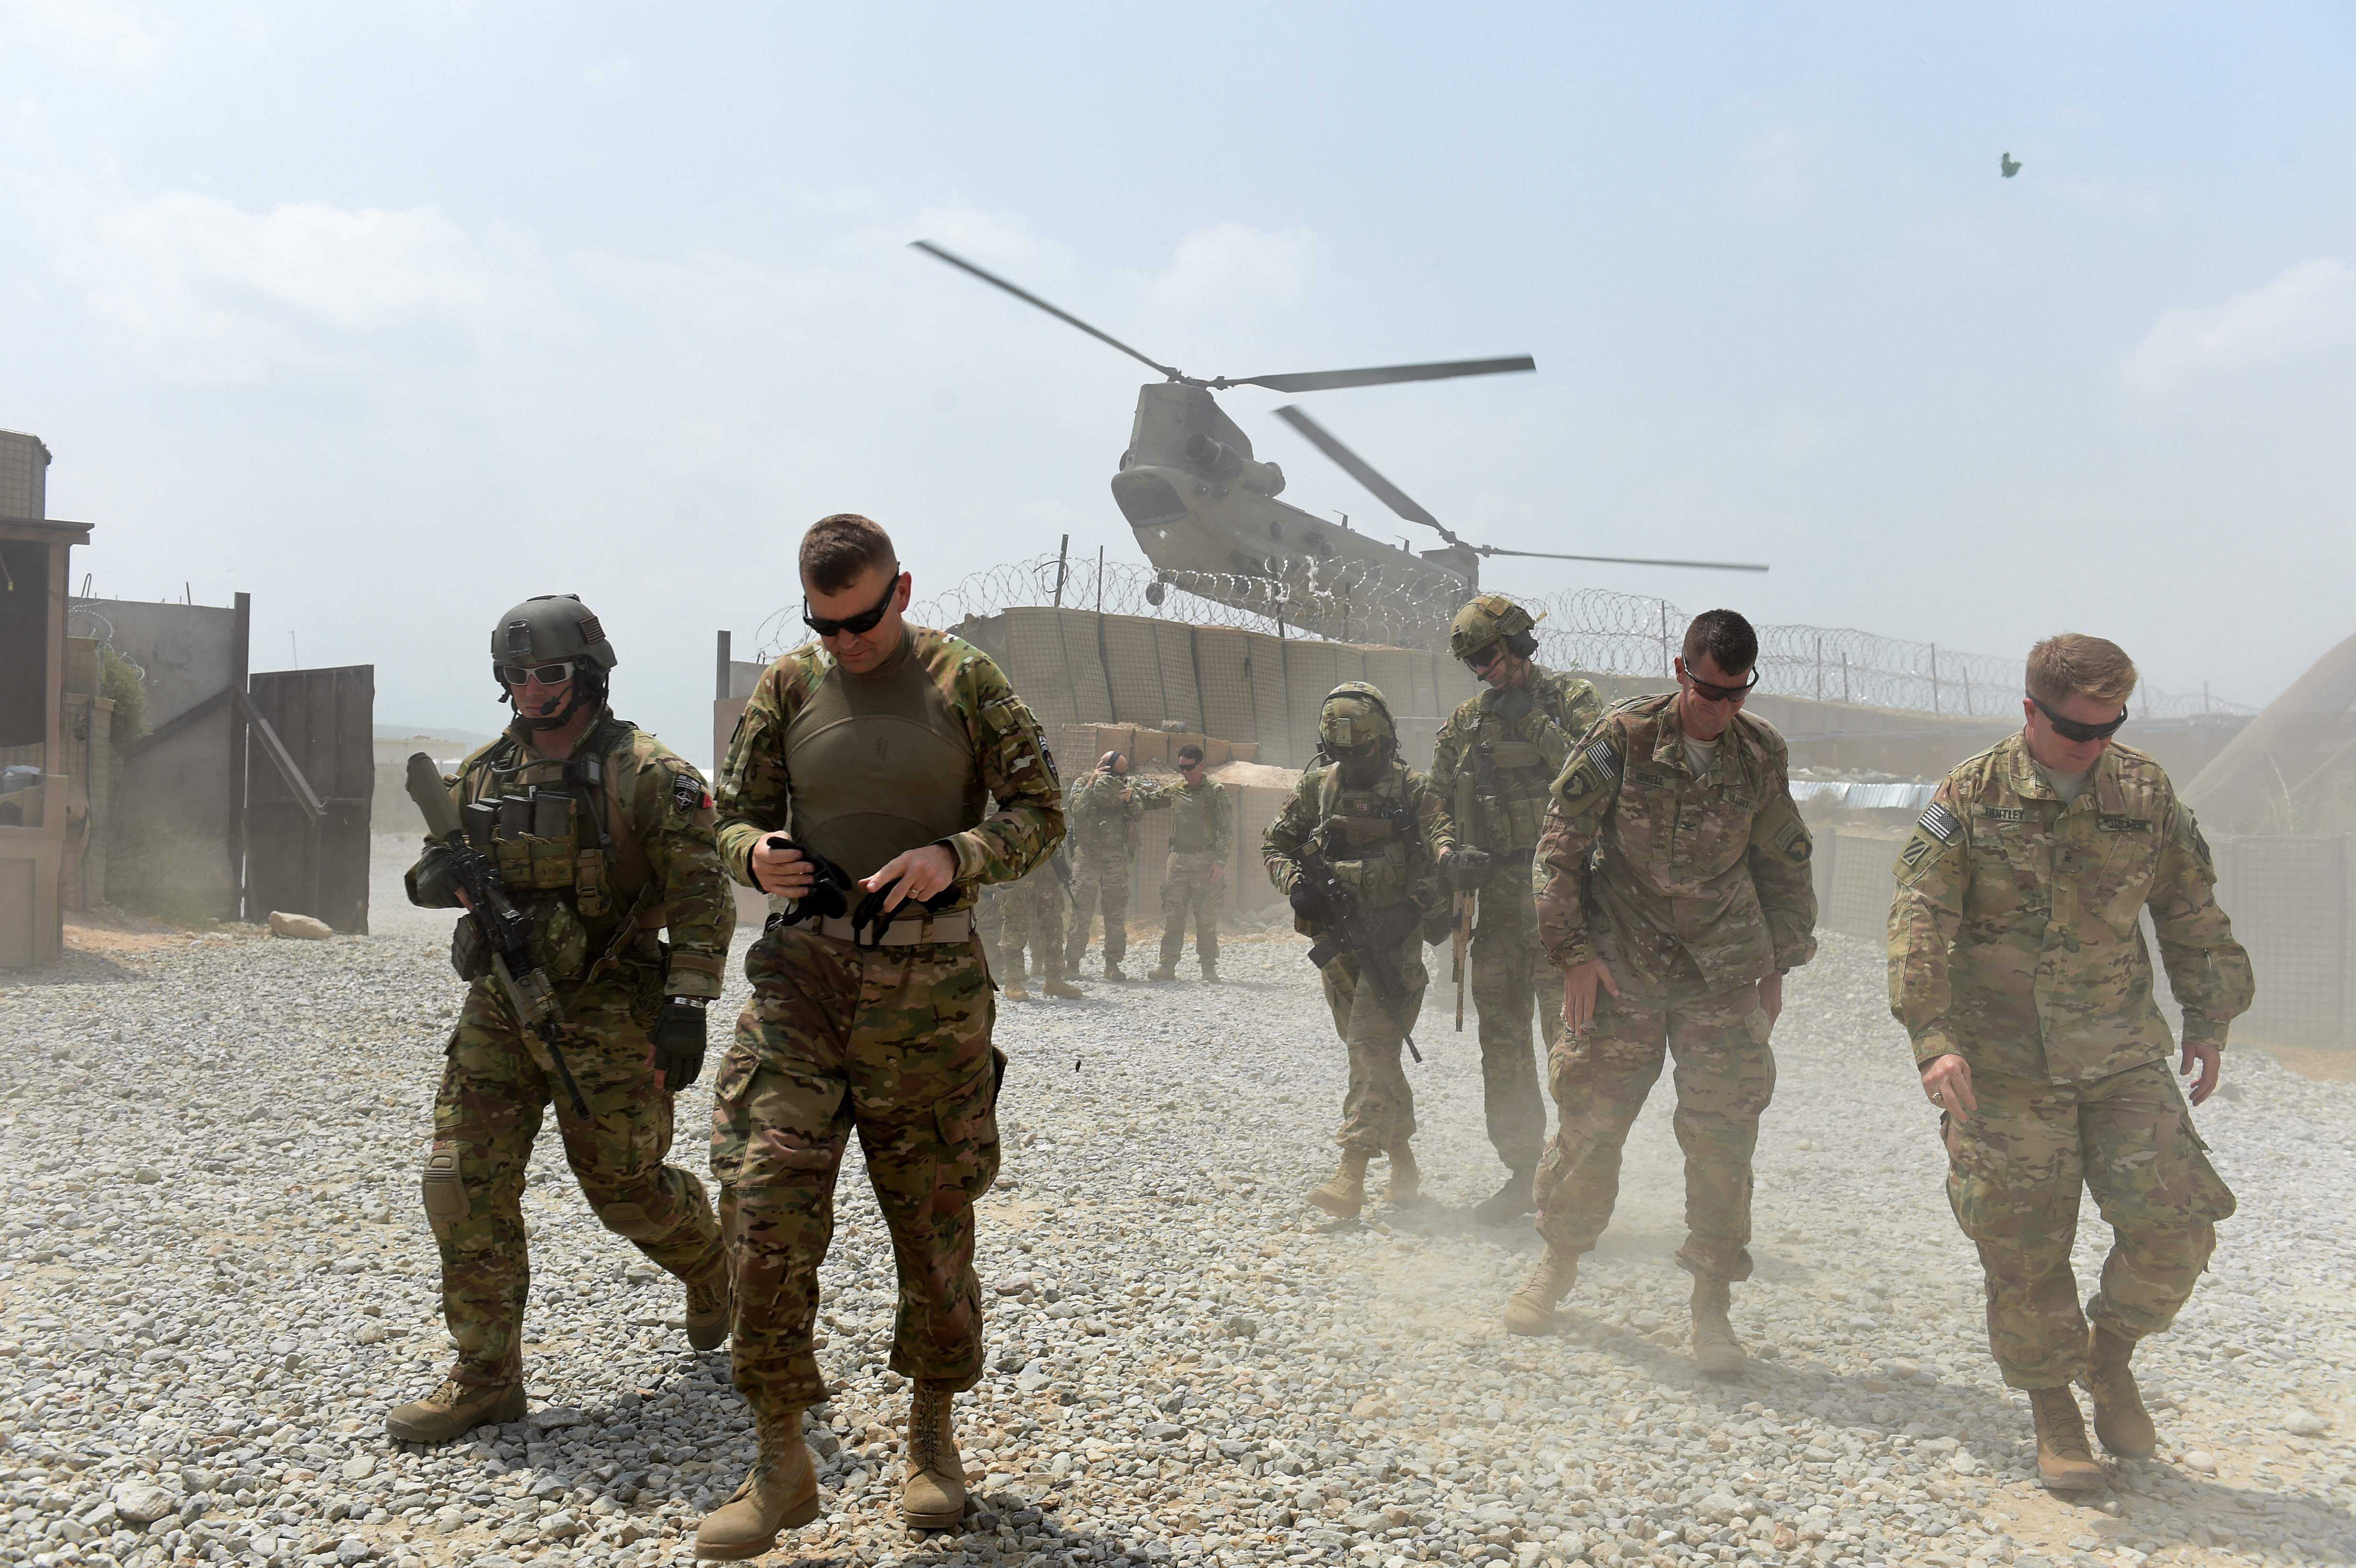 据报道,这一事件发生在敏感时机,美军正在再次寻求早日结束阿富汗战争